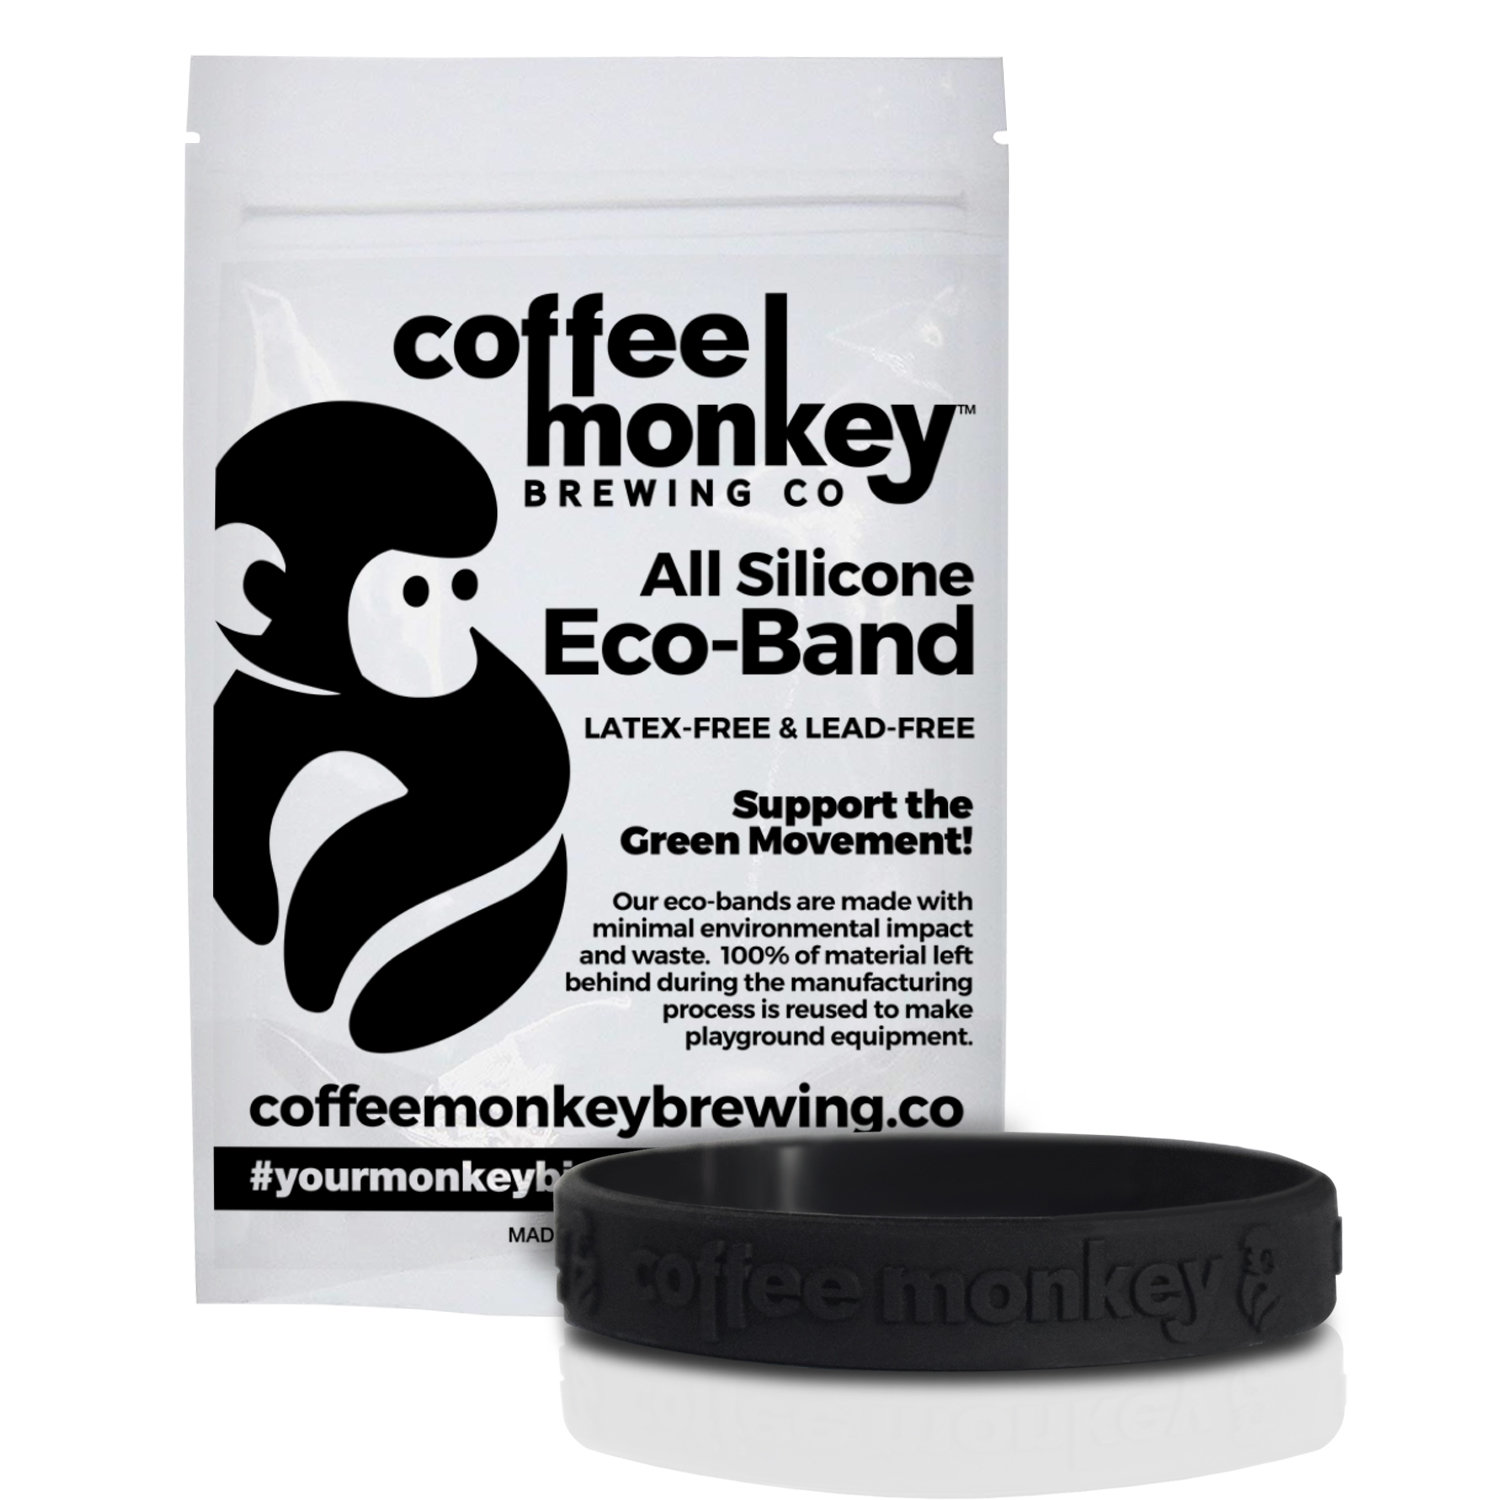 Enlist in the Coffee Monkey Troop (Get 10% Off & More!)